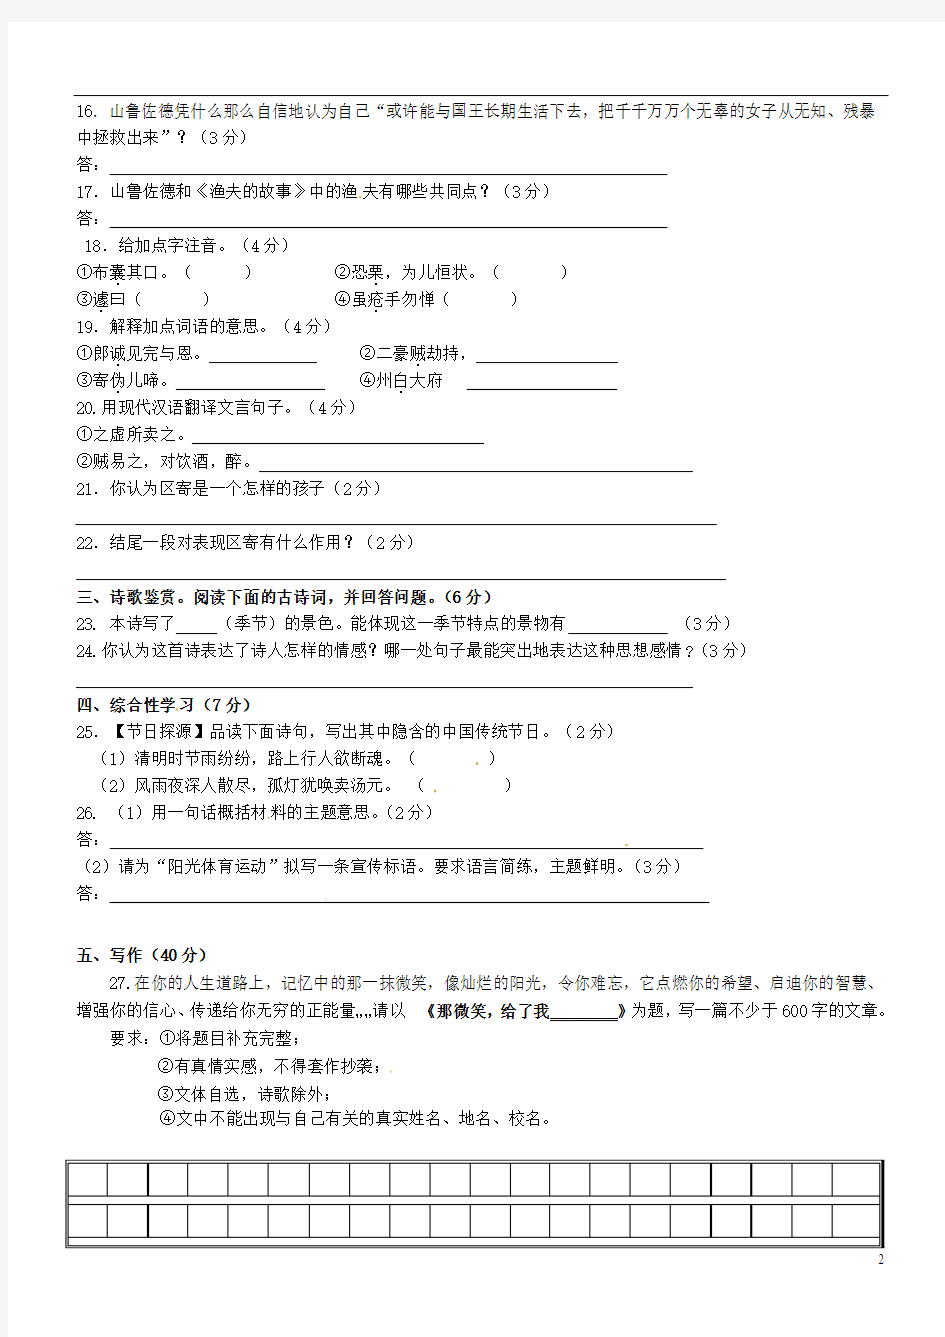 甘肃省张掖市第四中学2013-2014学年七年级语文上学期阶段测试(二)试题